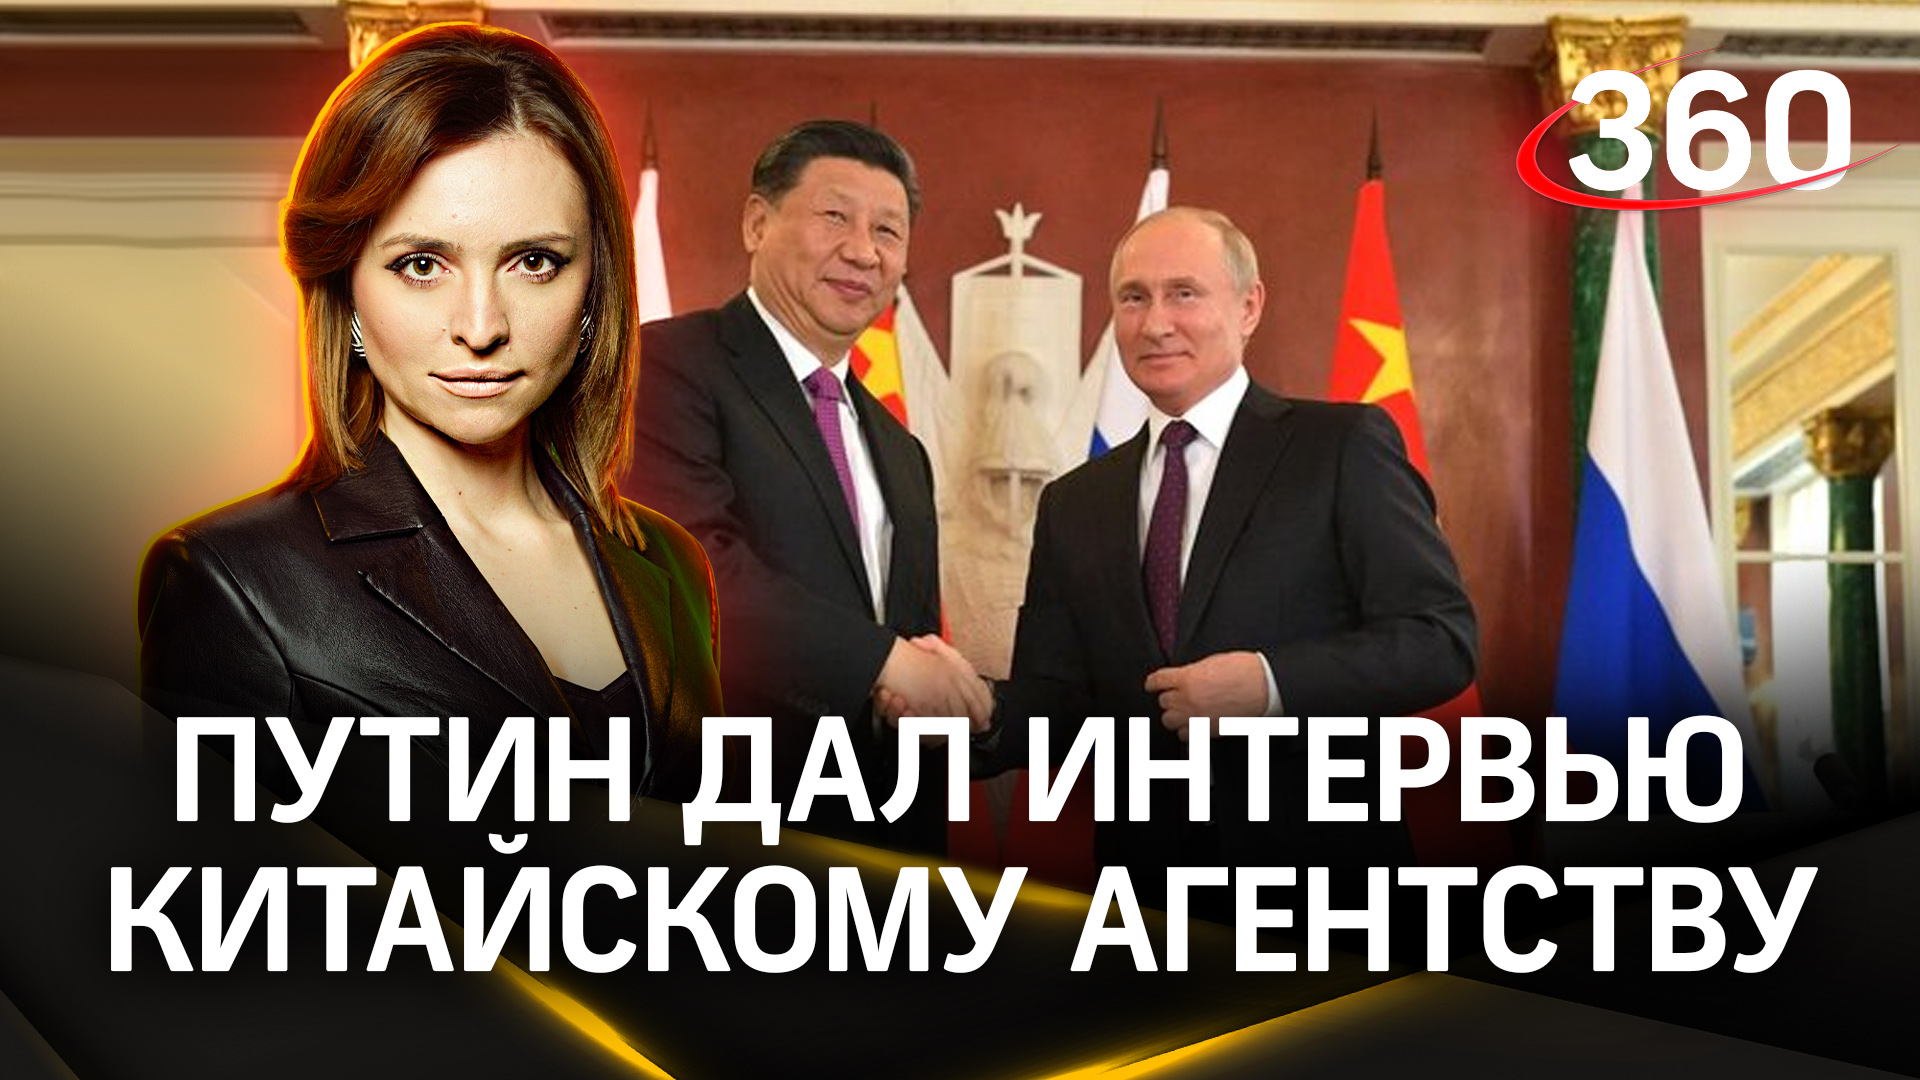 Партнерство с Китаем, лицемерие Запада: разбор ключевых тем из интервью Путина перед визитом в КНР